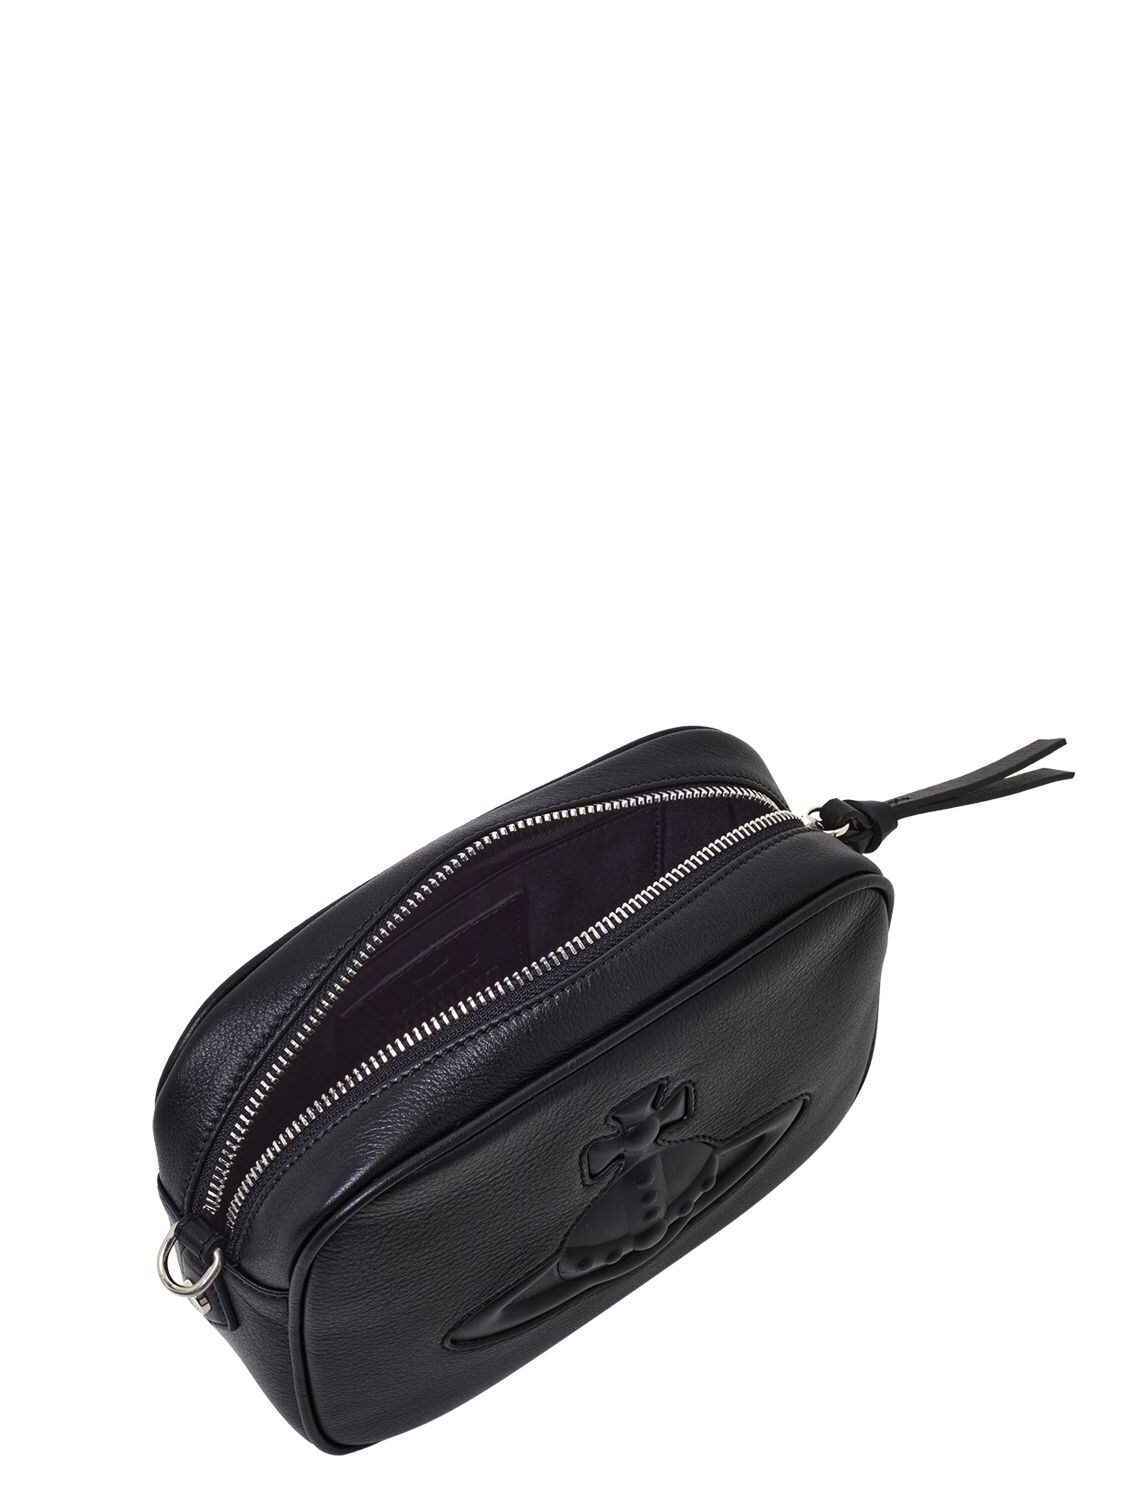 Shop Vivienne Westwood Anna Leather Camera Bag In Black